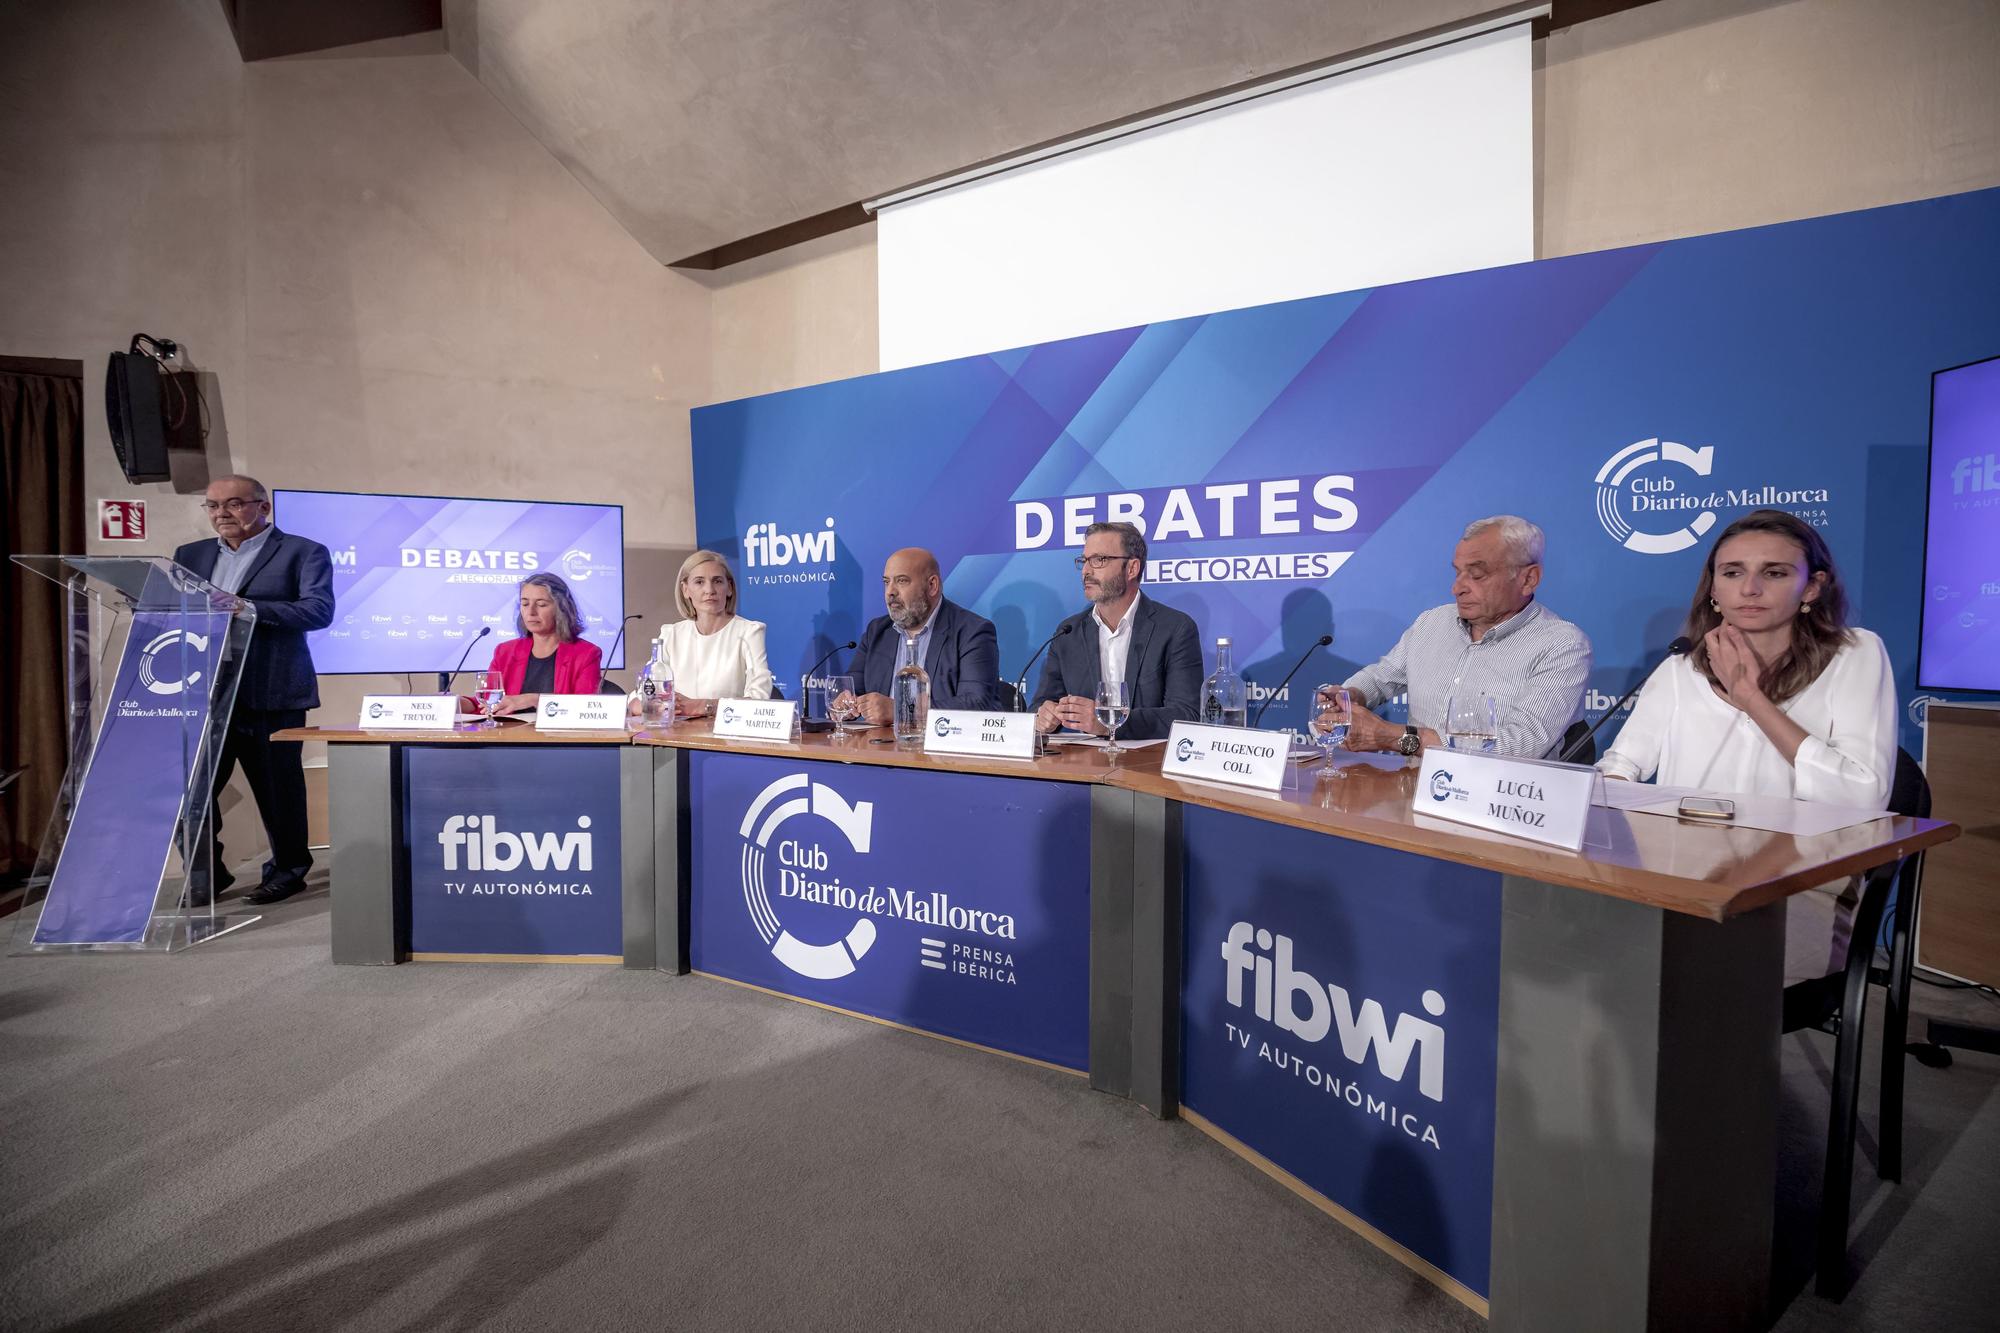 Debate electoral entre los candidatos al ayuntamiento de Palma